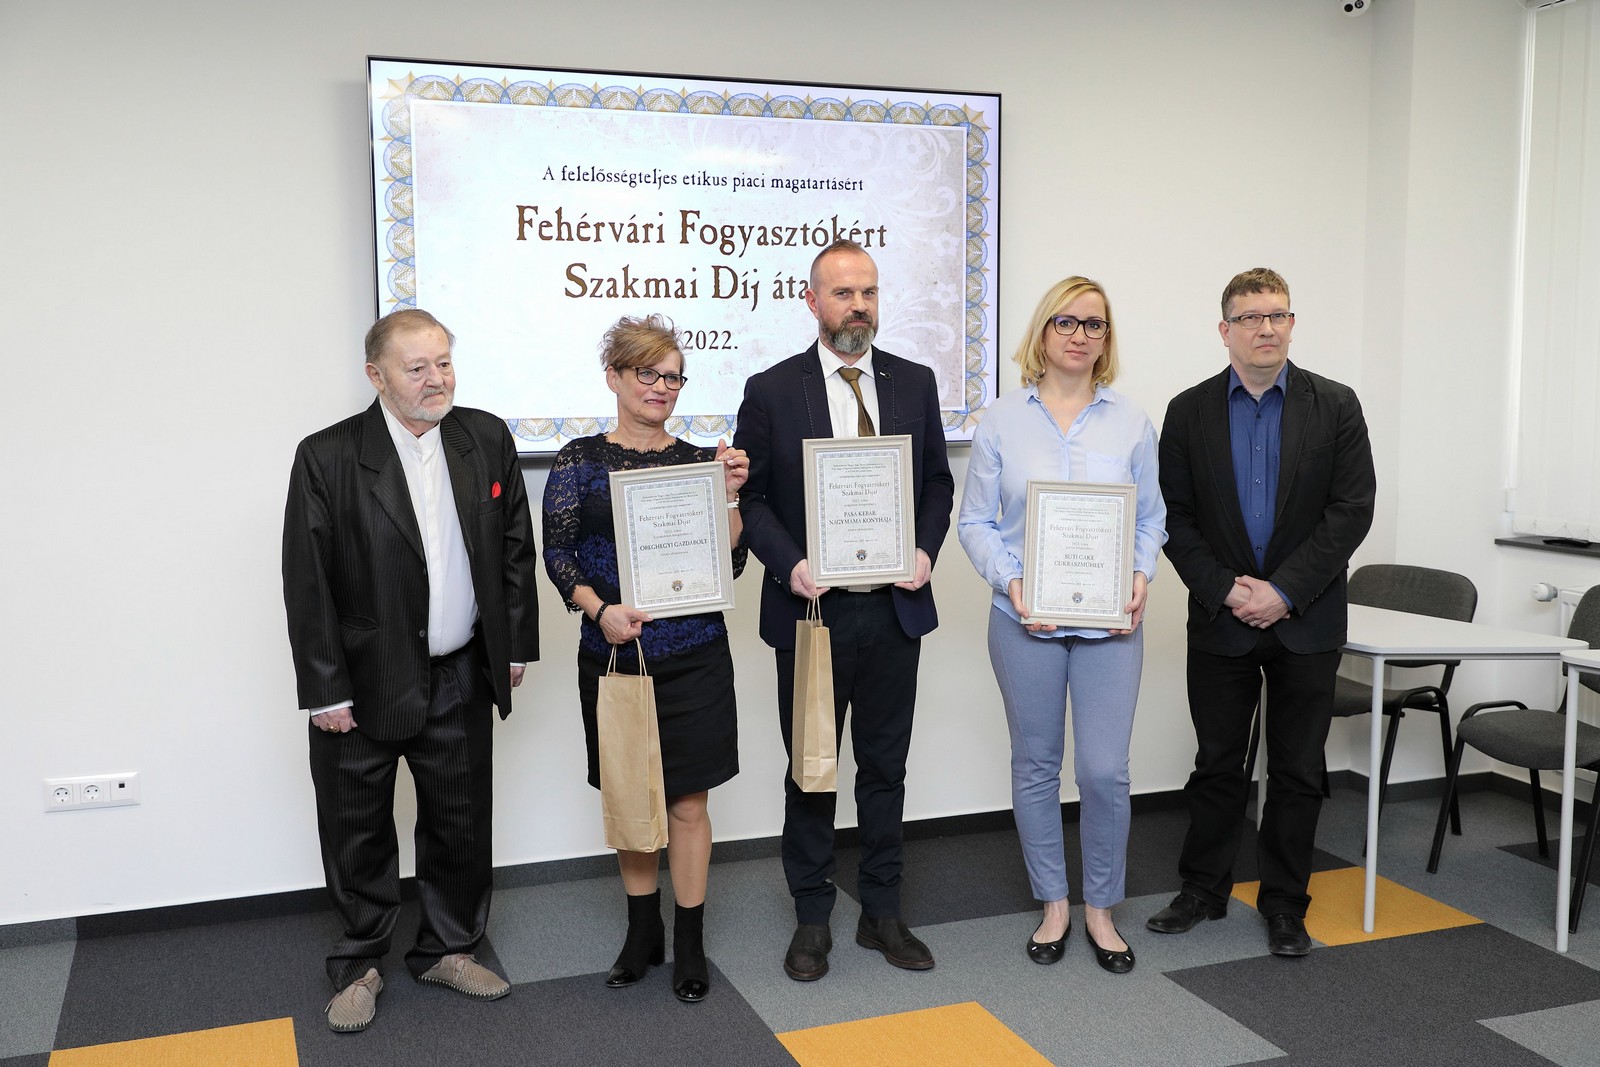 Fehérvári Fogyasztókért Szakmai Díj 2022 - átadták az elismeréseket